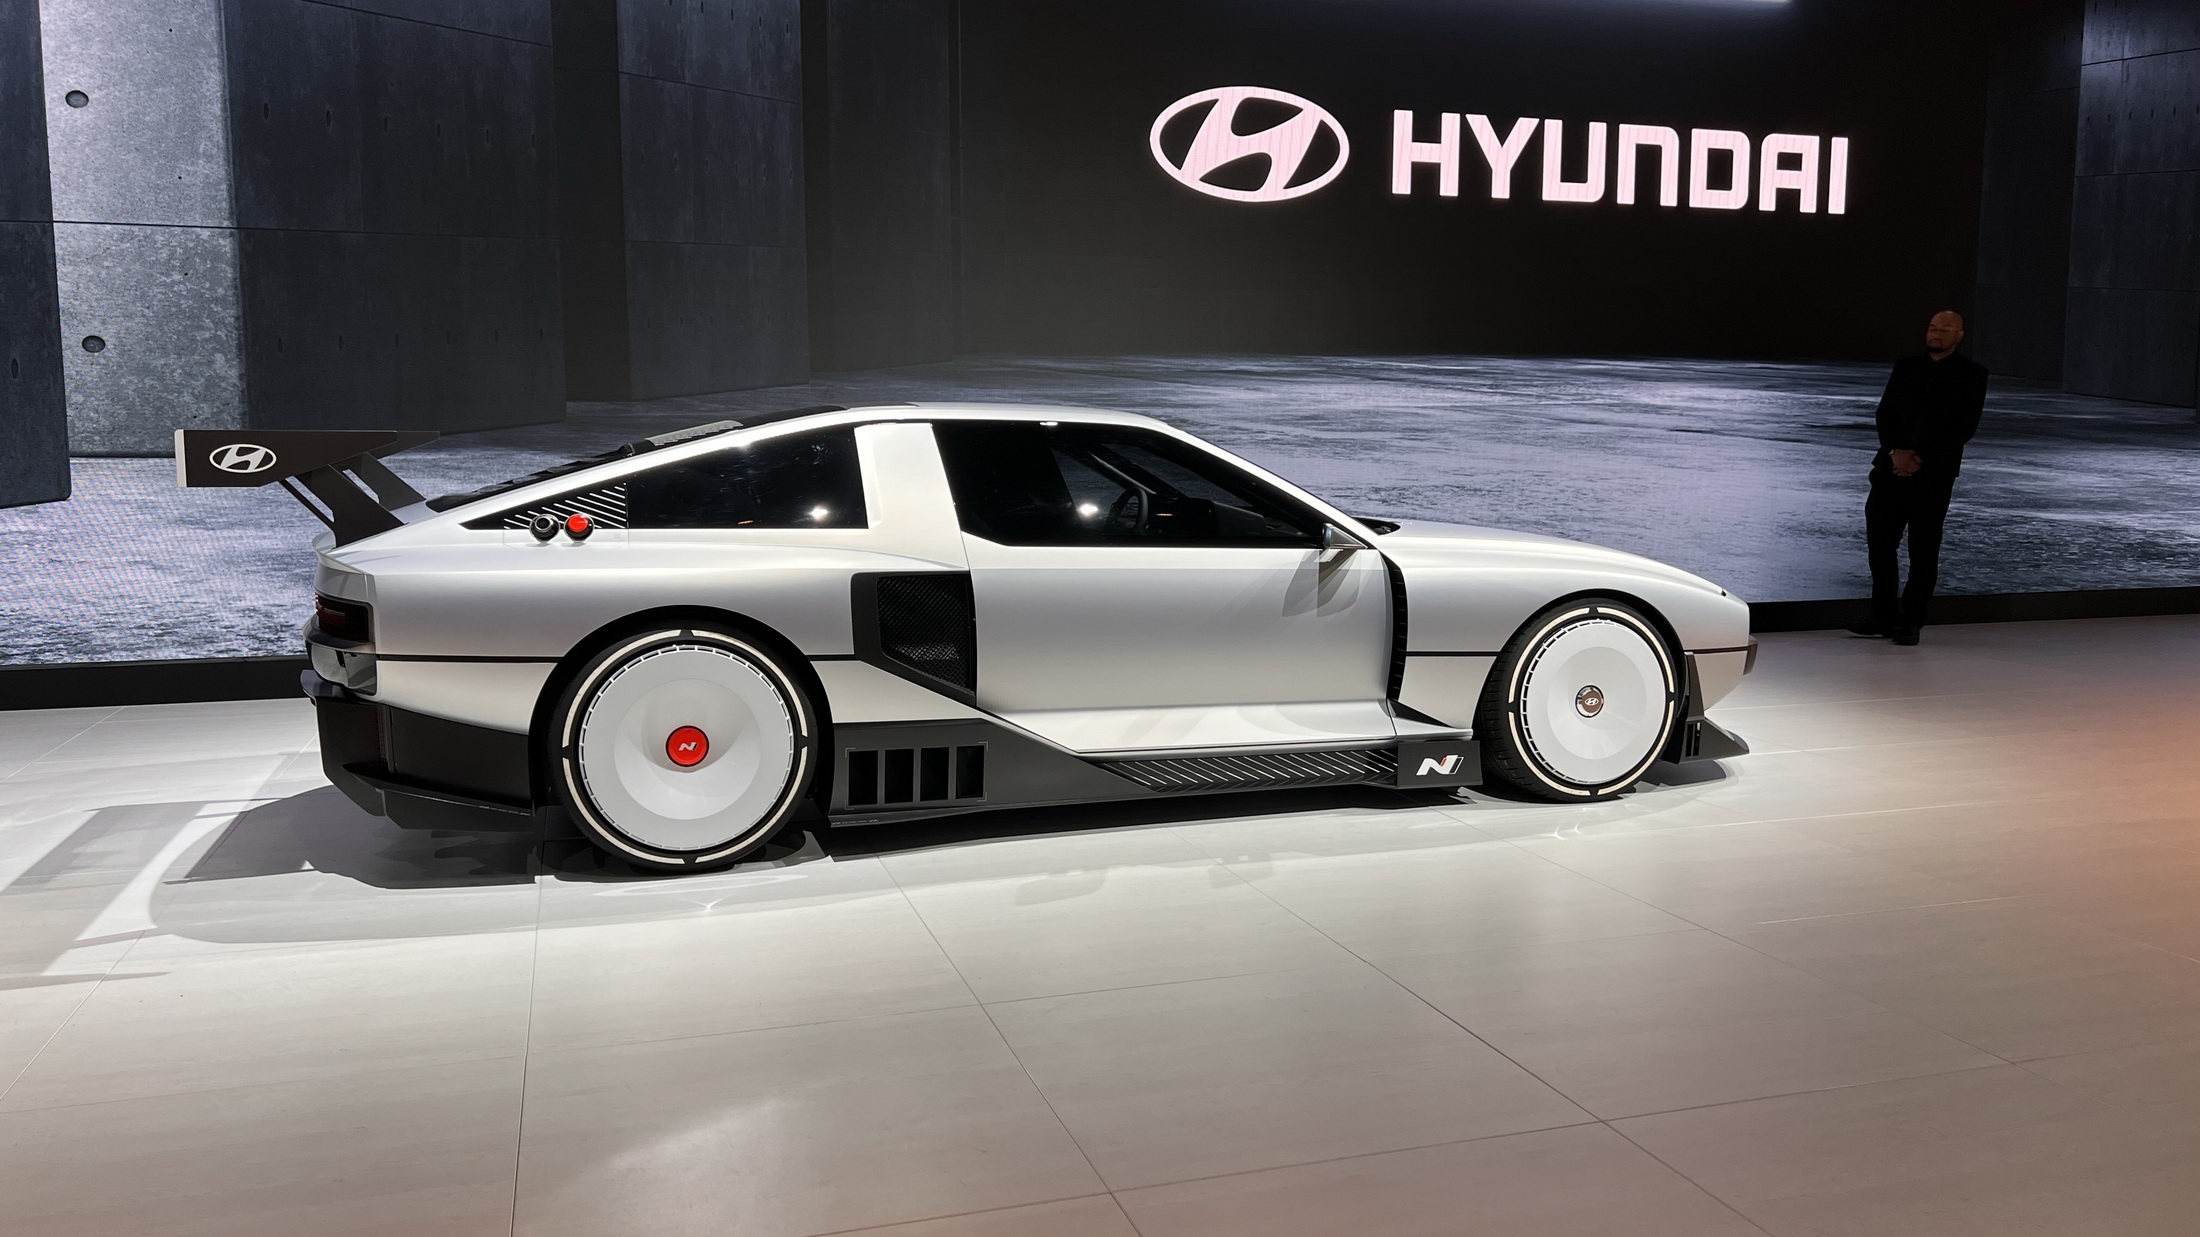 Hyundai N Vision 74 Concept make US debut at the LA Auto Show - EVMagz